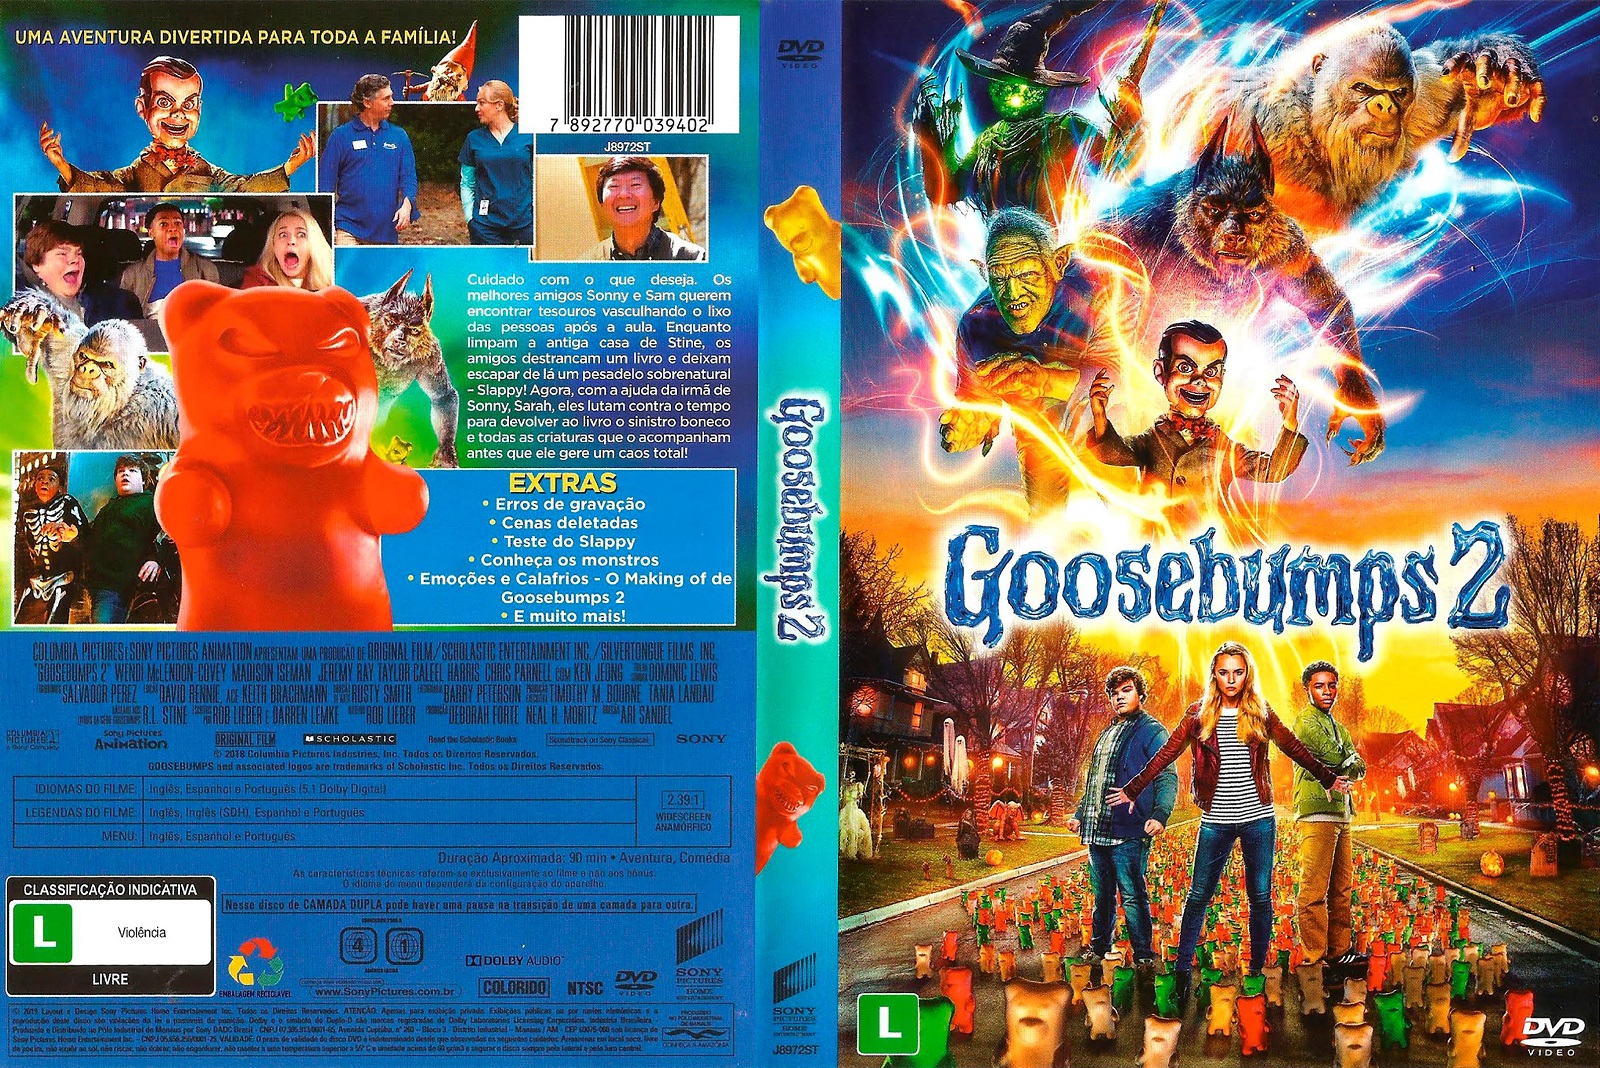 GOOSEBUMPS 2: HALLOWEEN ASSOMBRADO Trailer Brasileiro DUBLADO